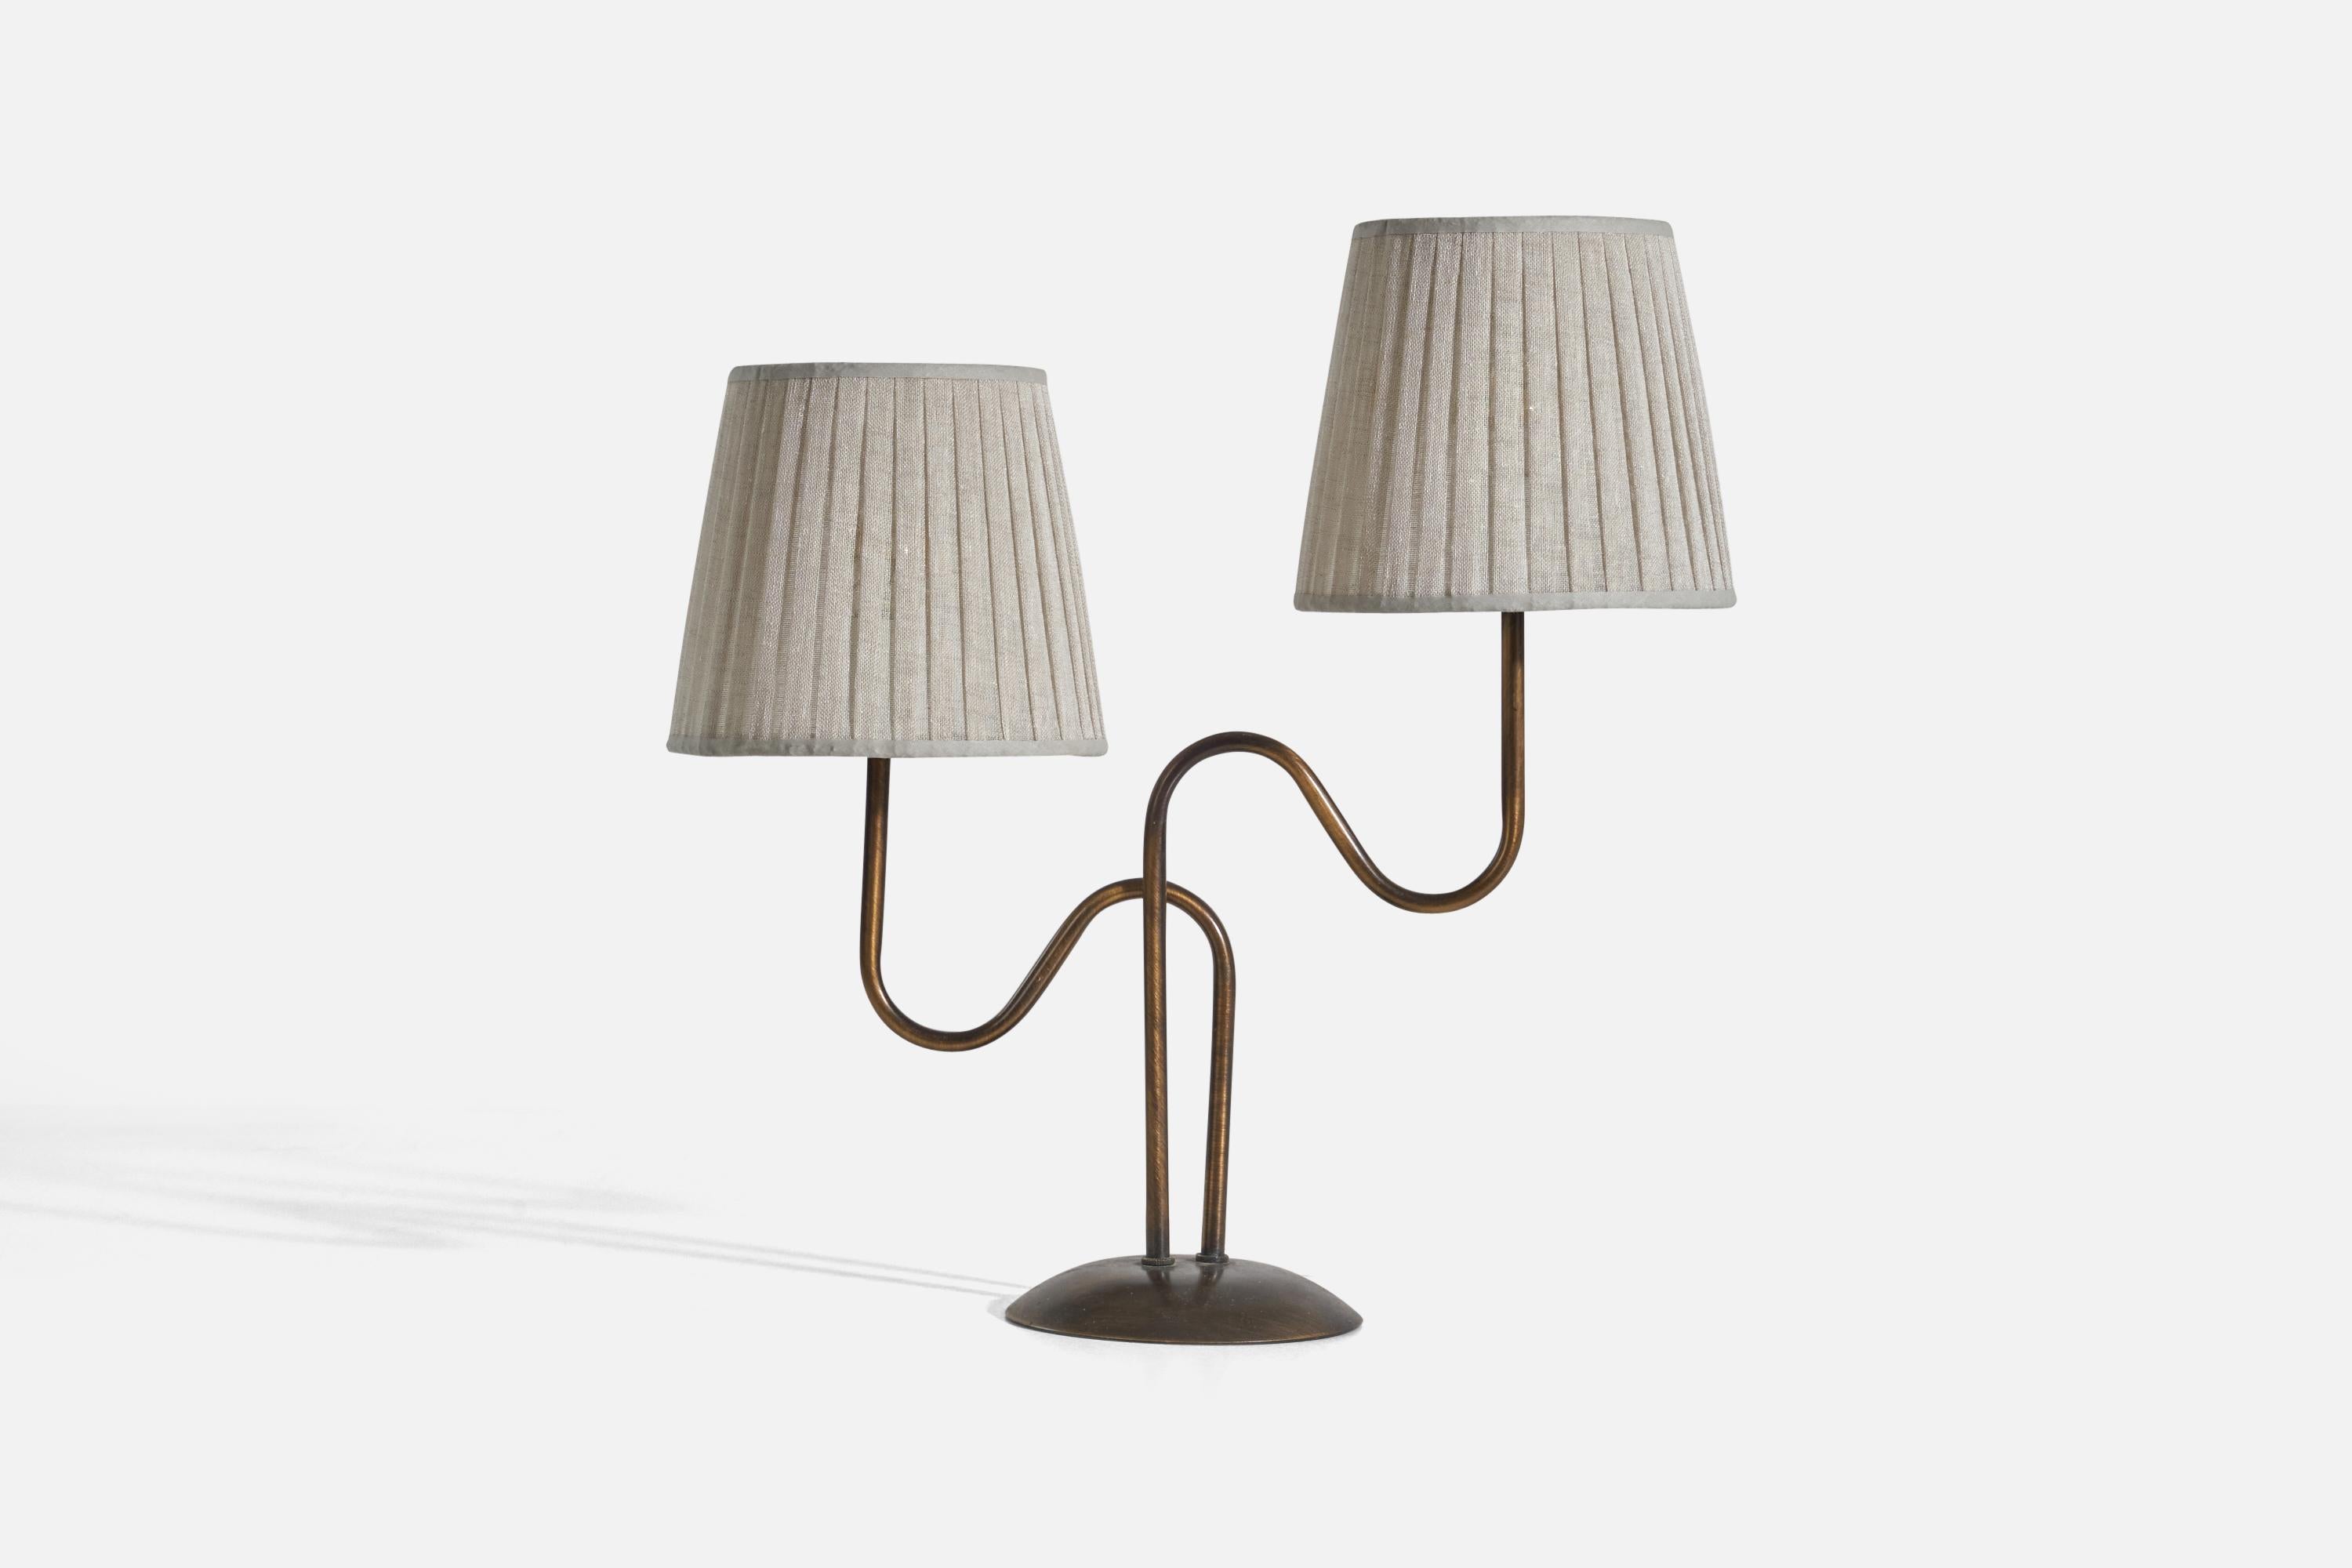 Lampe de table à deux lumières en laiton et tissu, conçue et produite en Suède, vers les années 1970-1980.

Vendu avec abat-jour. Les dimensions indiquées sont celles de la lampe de table avec abat-jour.

La douille accepte les ampoules